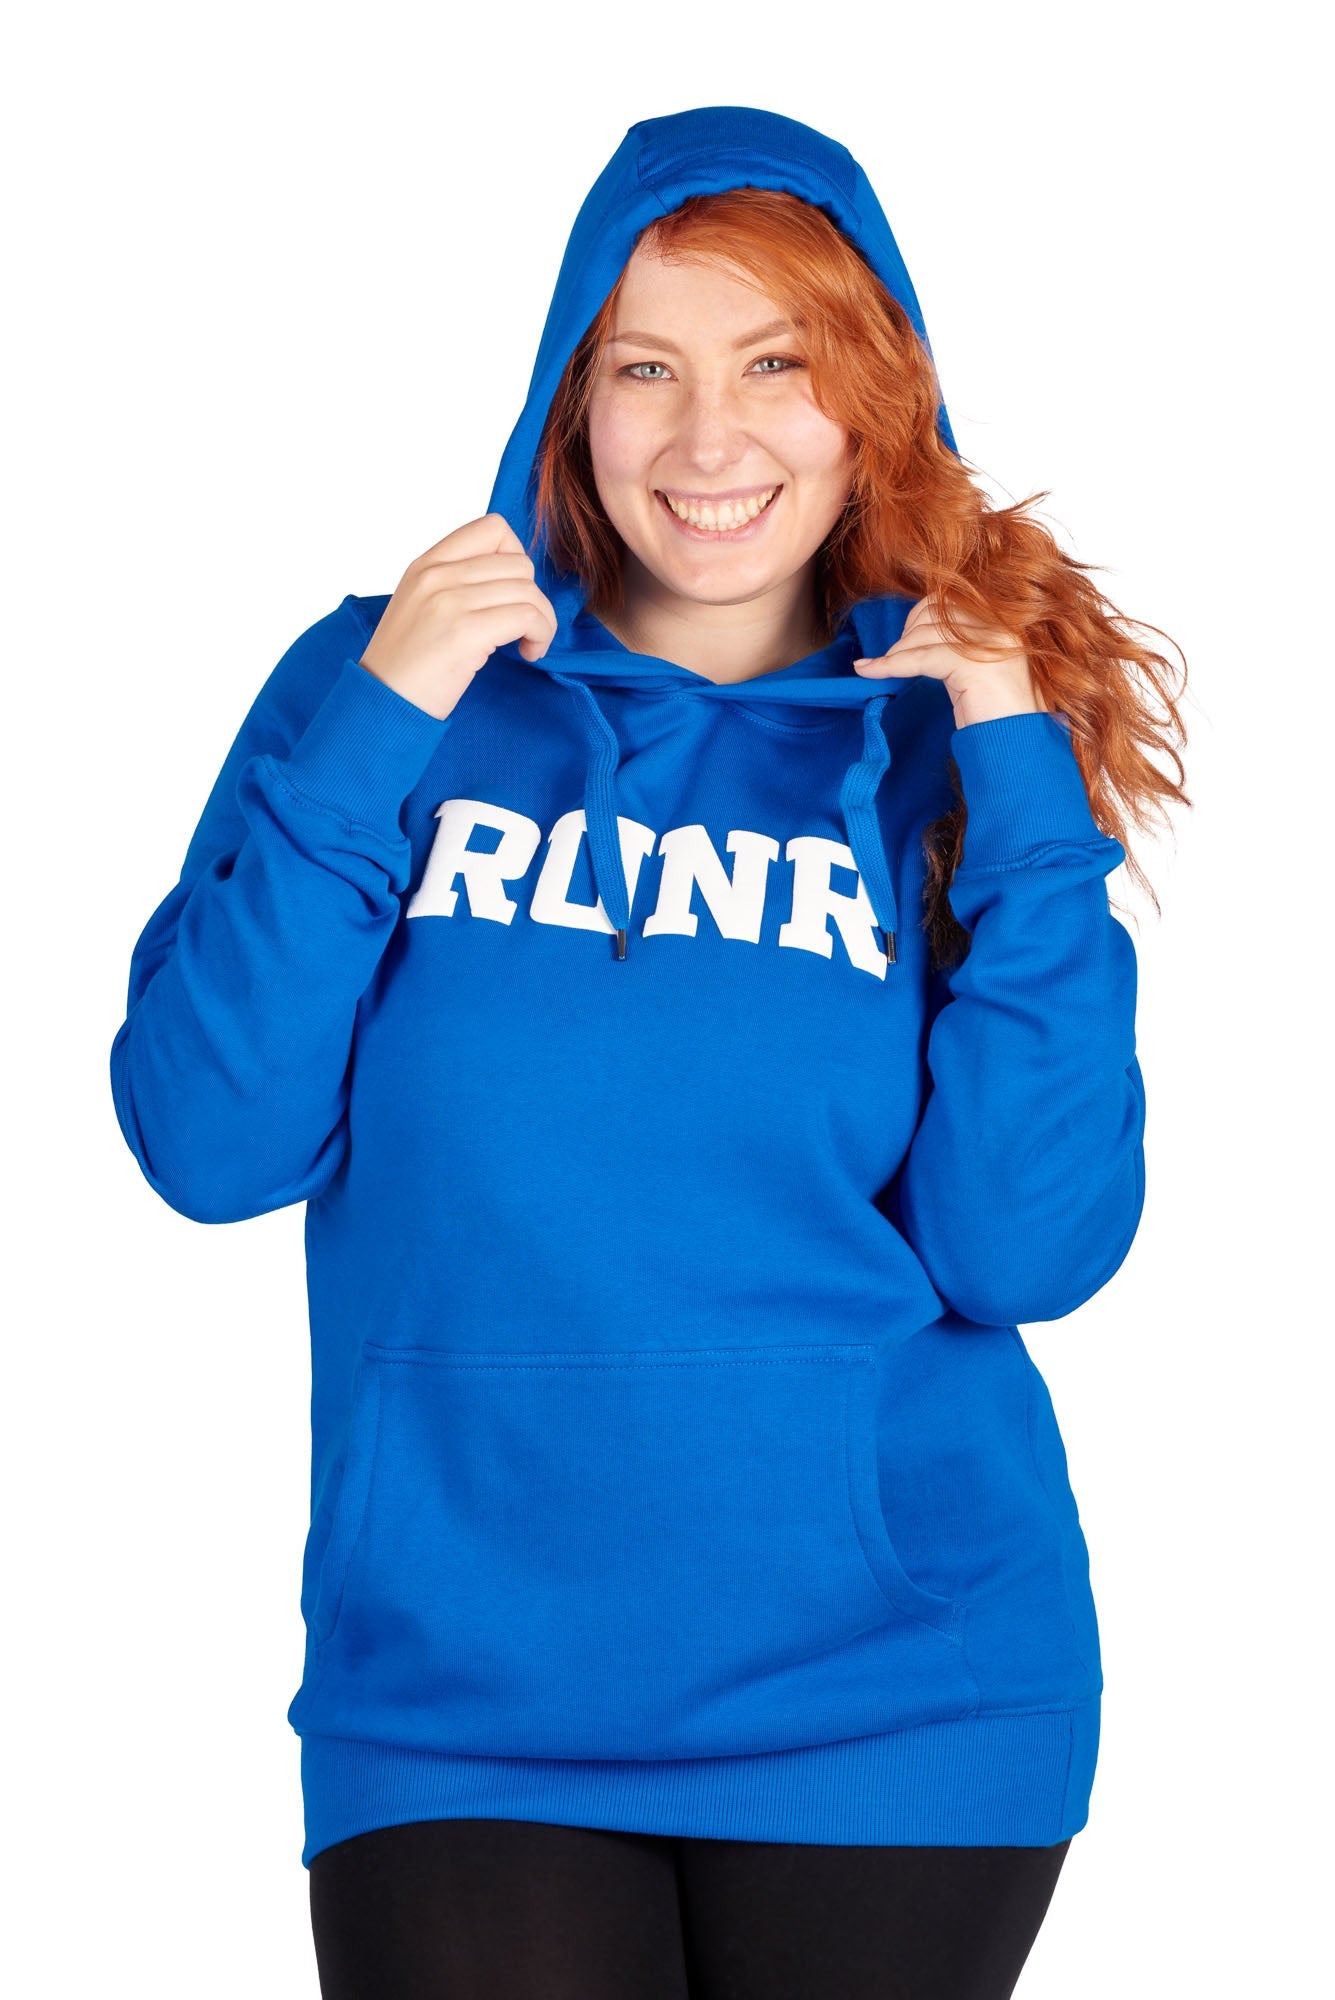 Women's Athletic Blue Organic Runr Hoodie